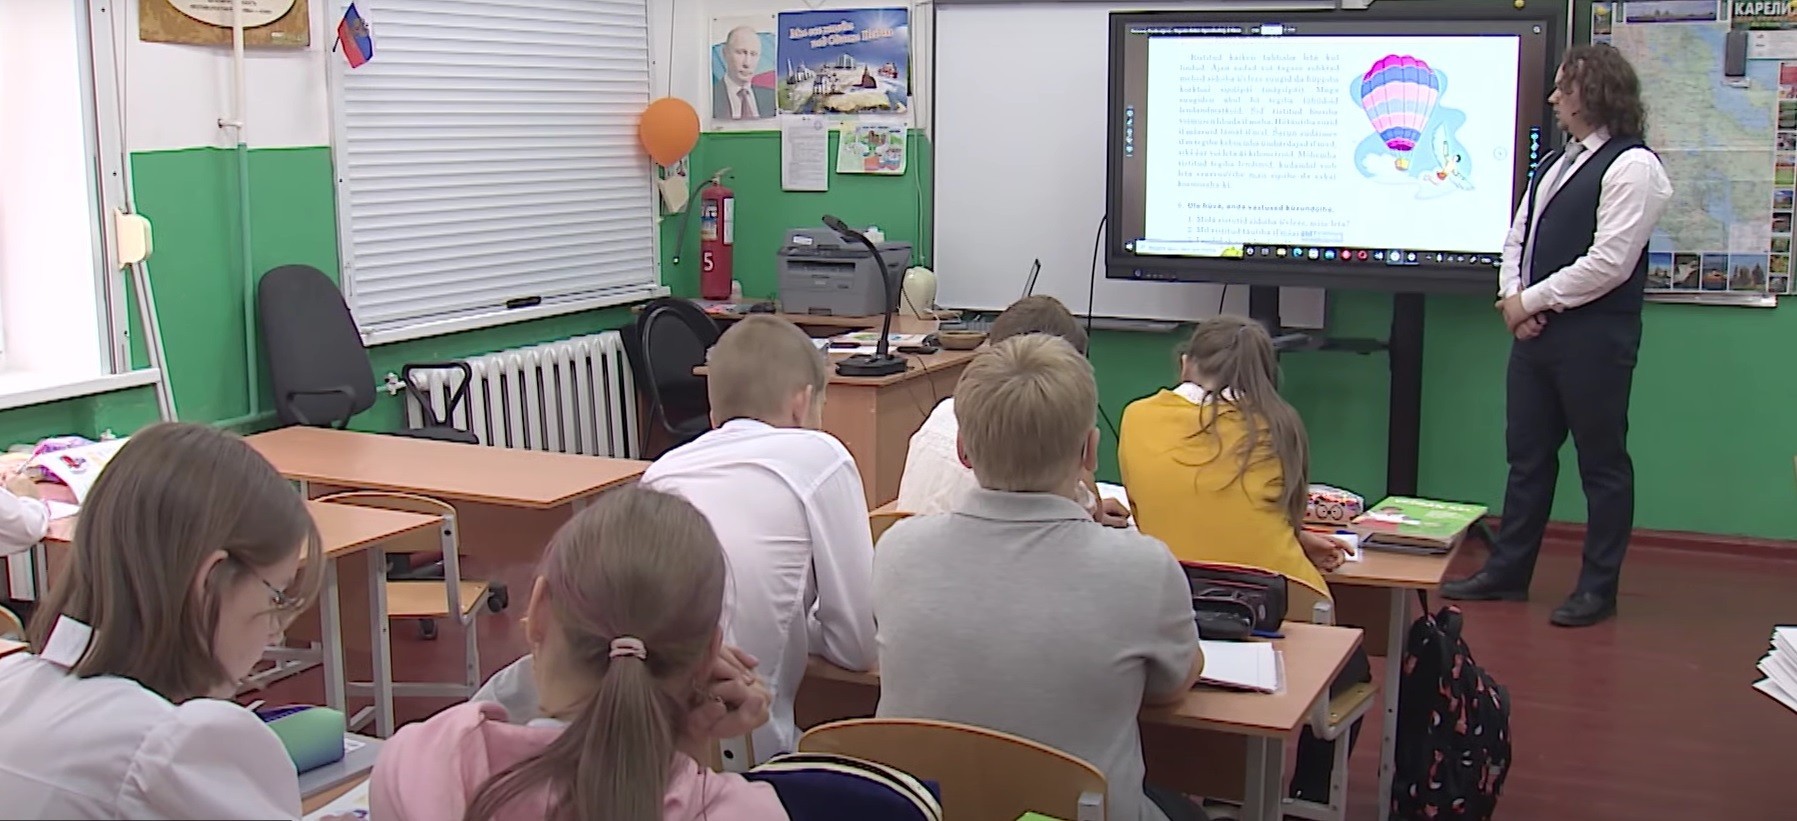 Глеб Фомин работает в Шокшинской школе три года, на своих уроках он использует современные технологии. Фото из личного архива Глеба Фомина